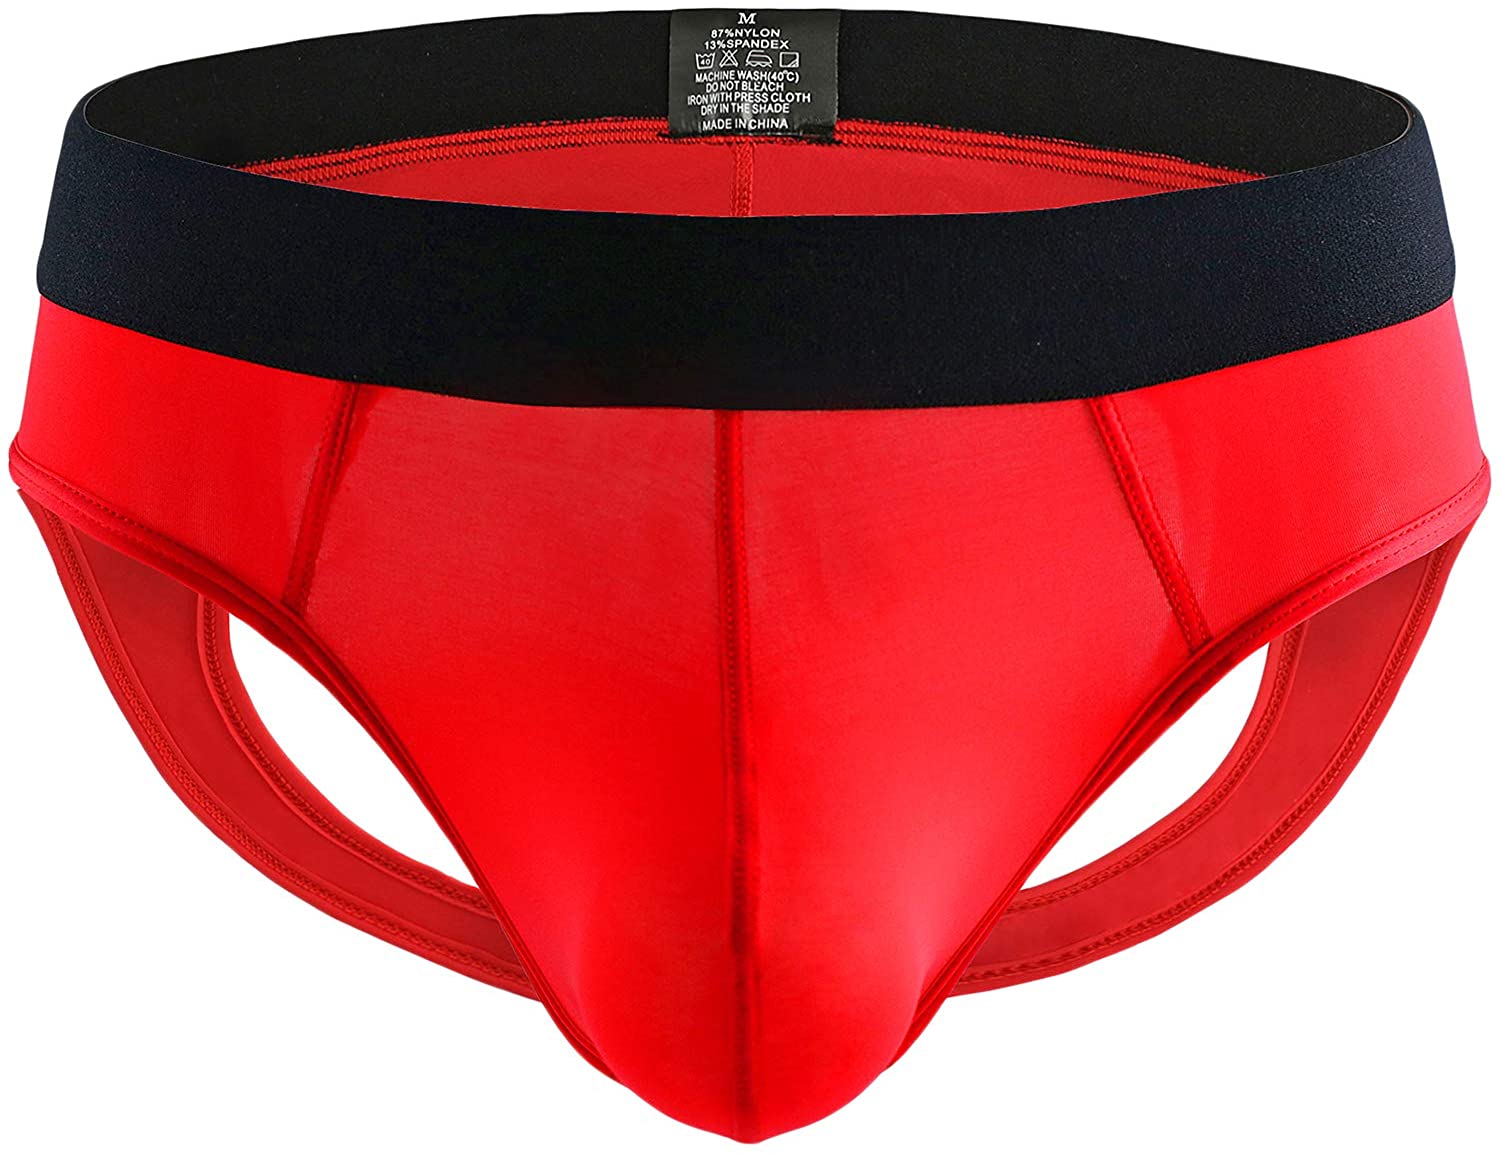 Yukaichen Men S Jockstrap Athletic Supporter Underwear Briefs Low Rise Ebay